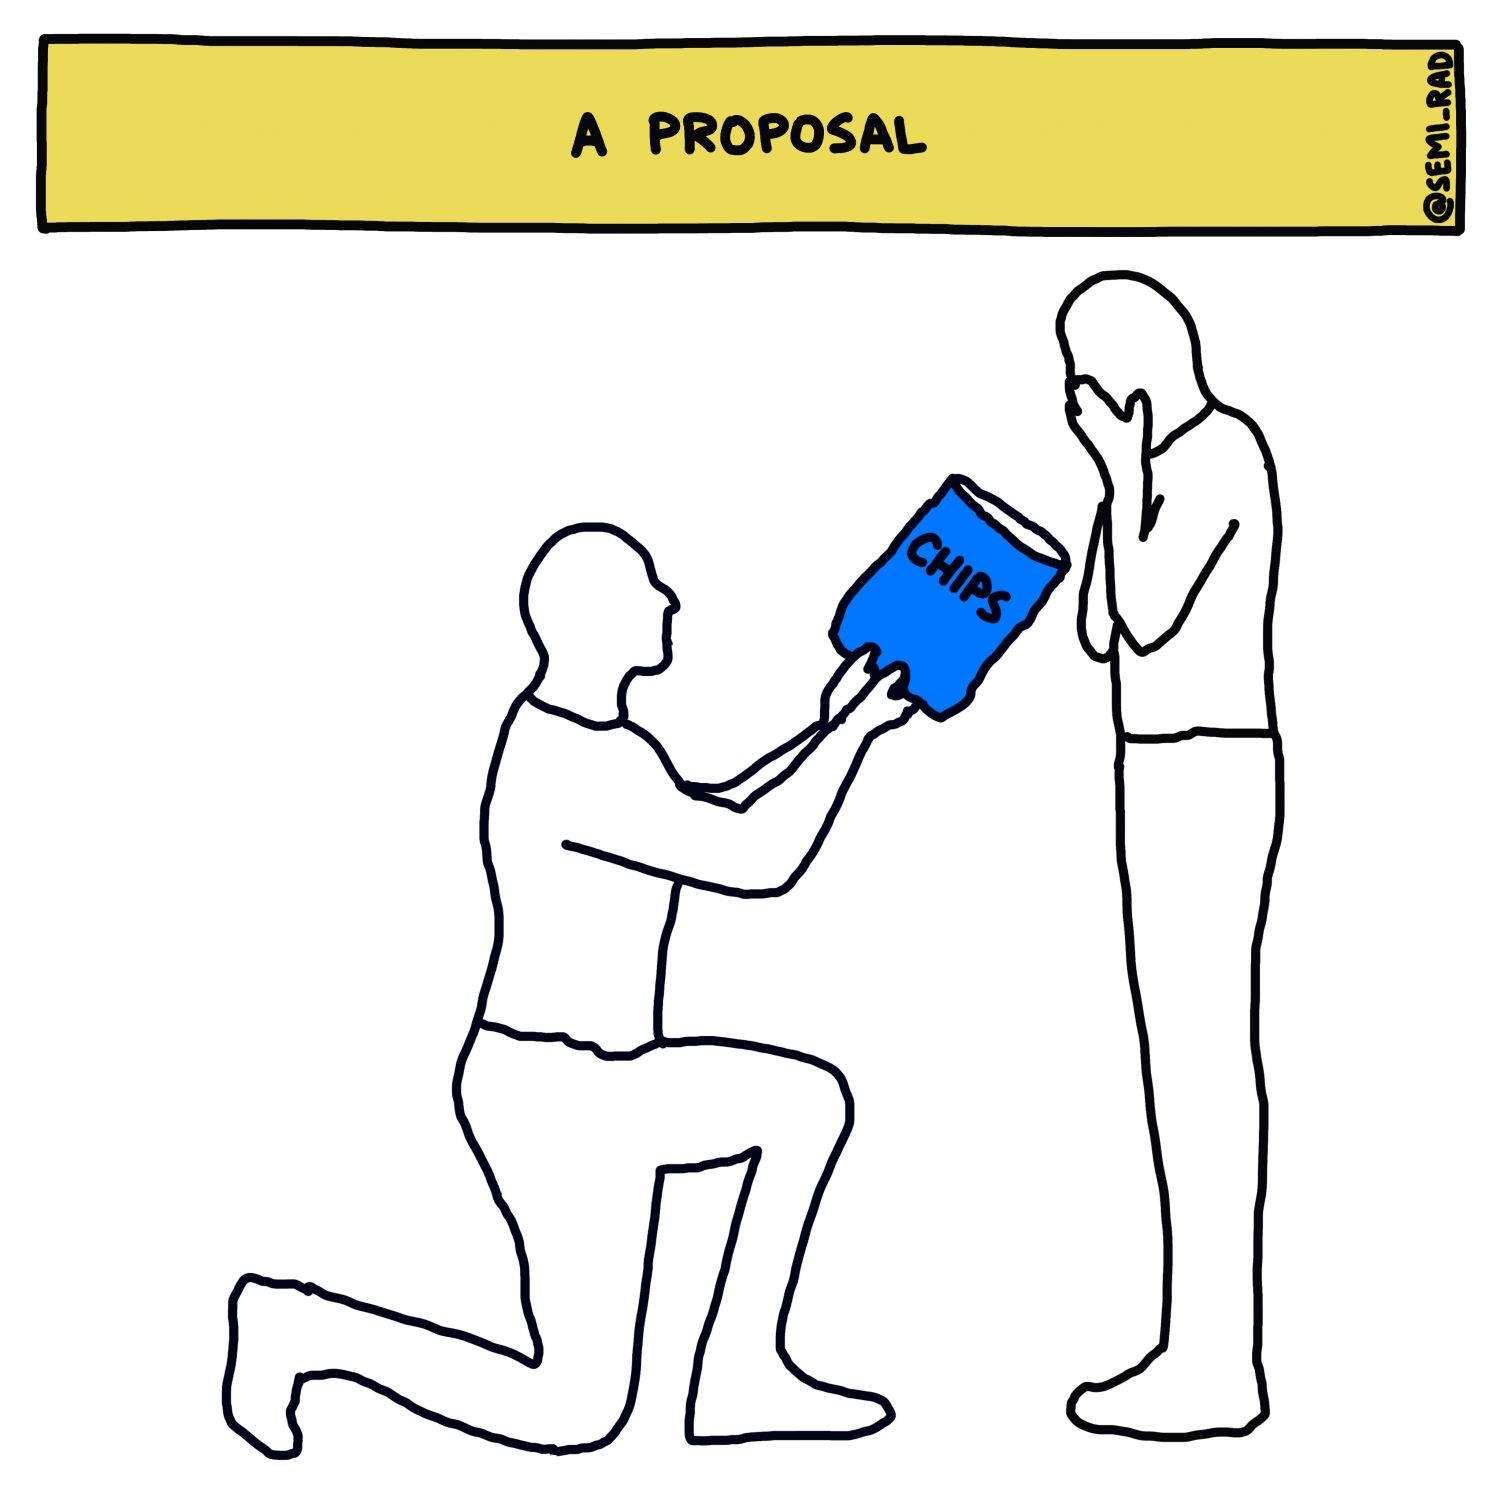 A Proposal